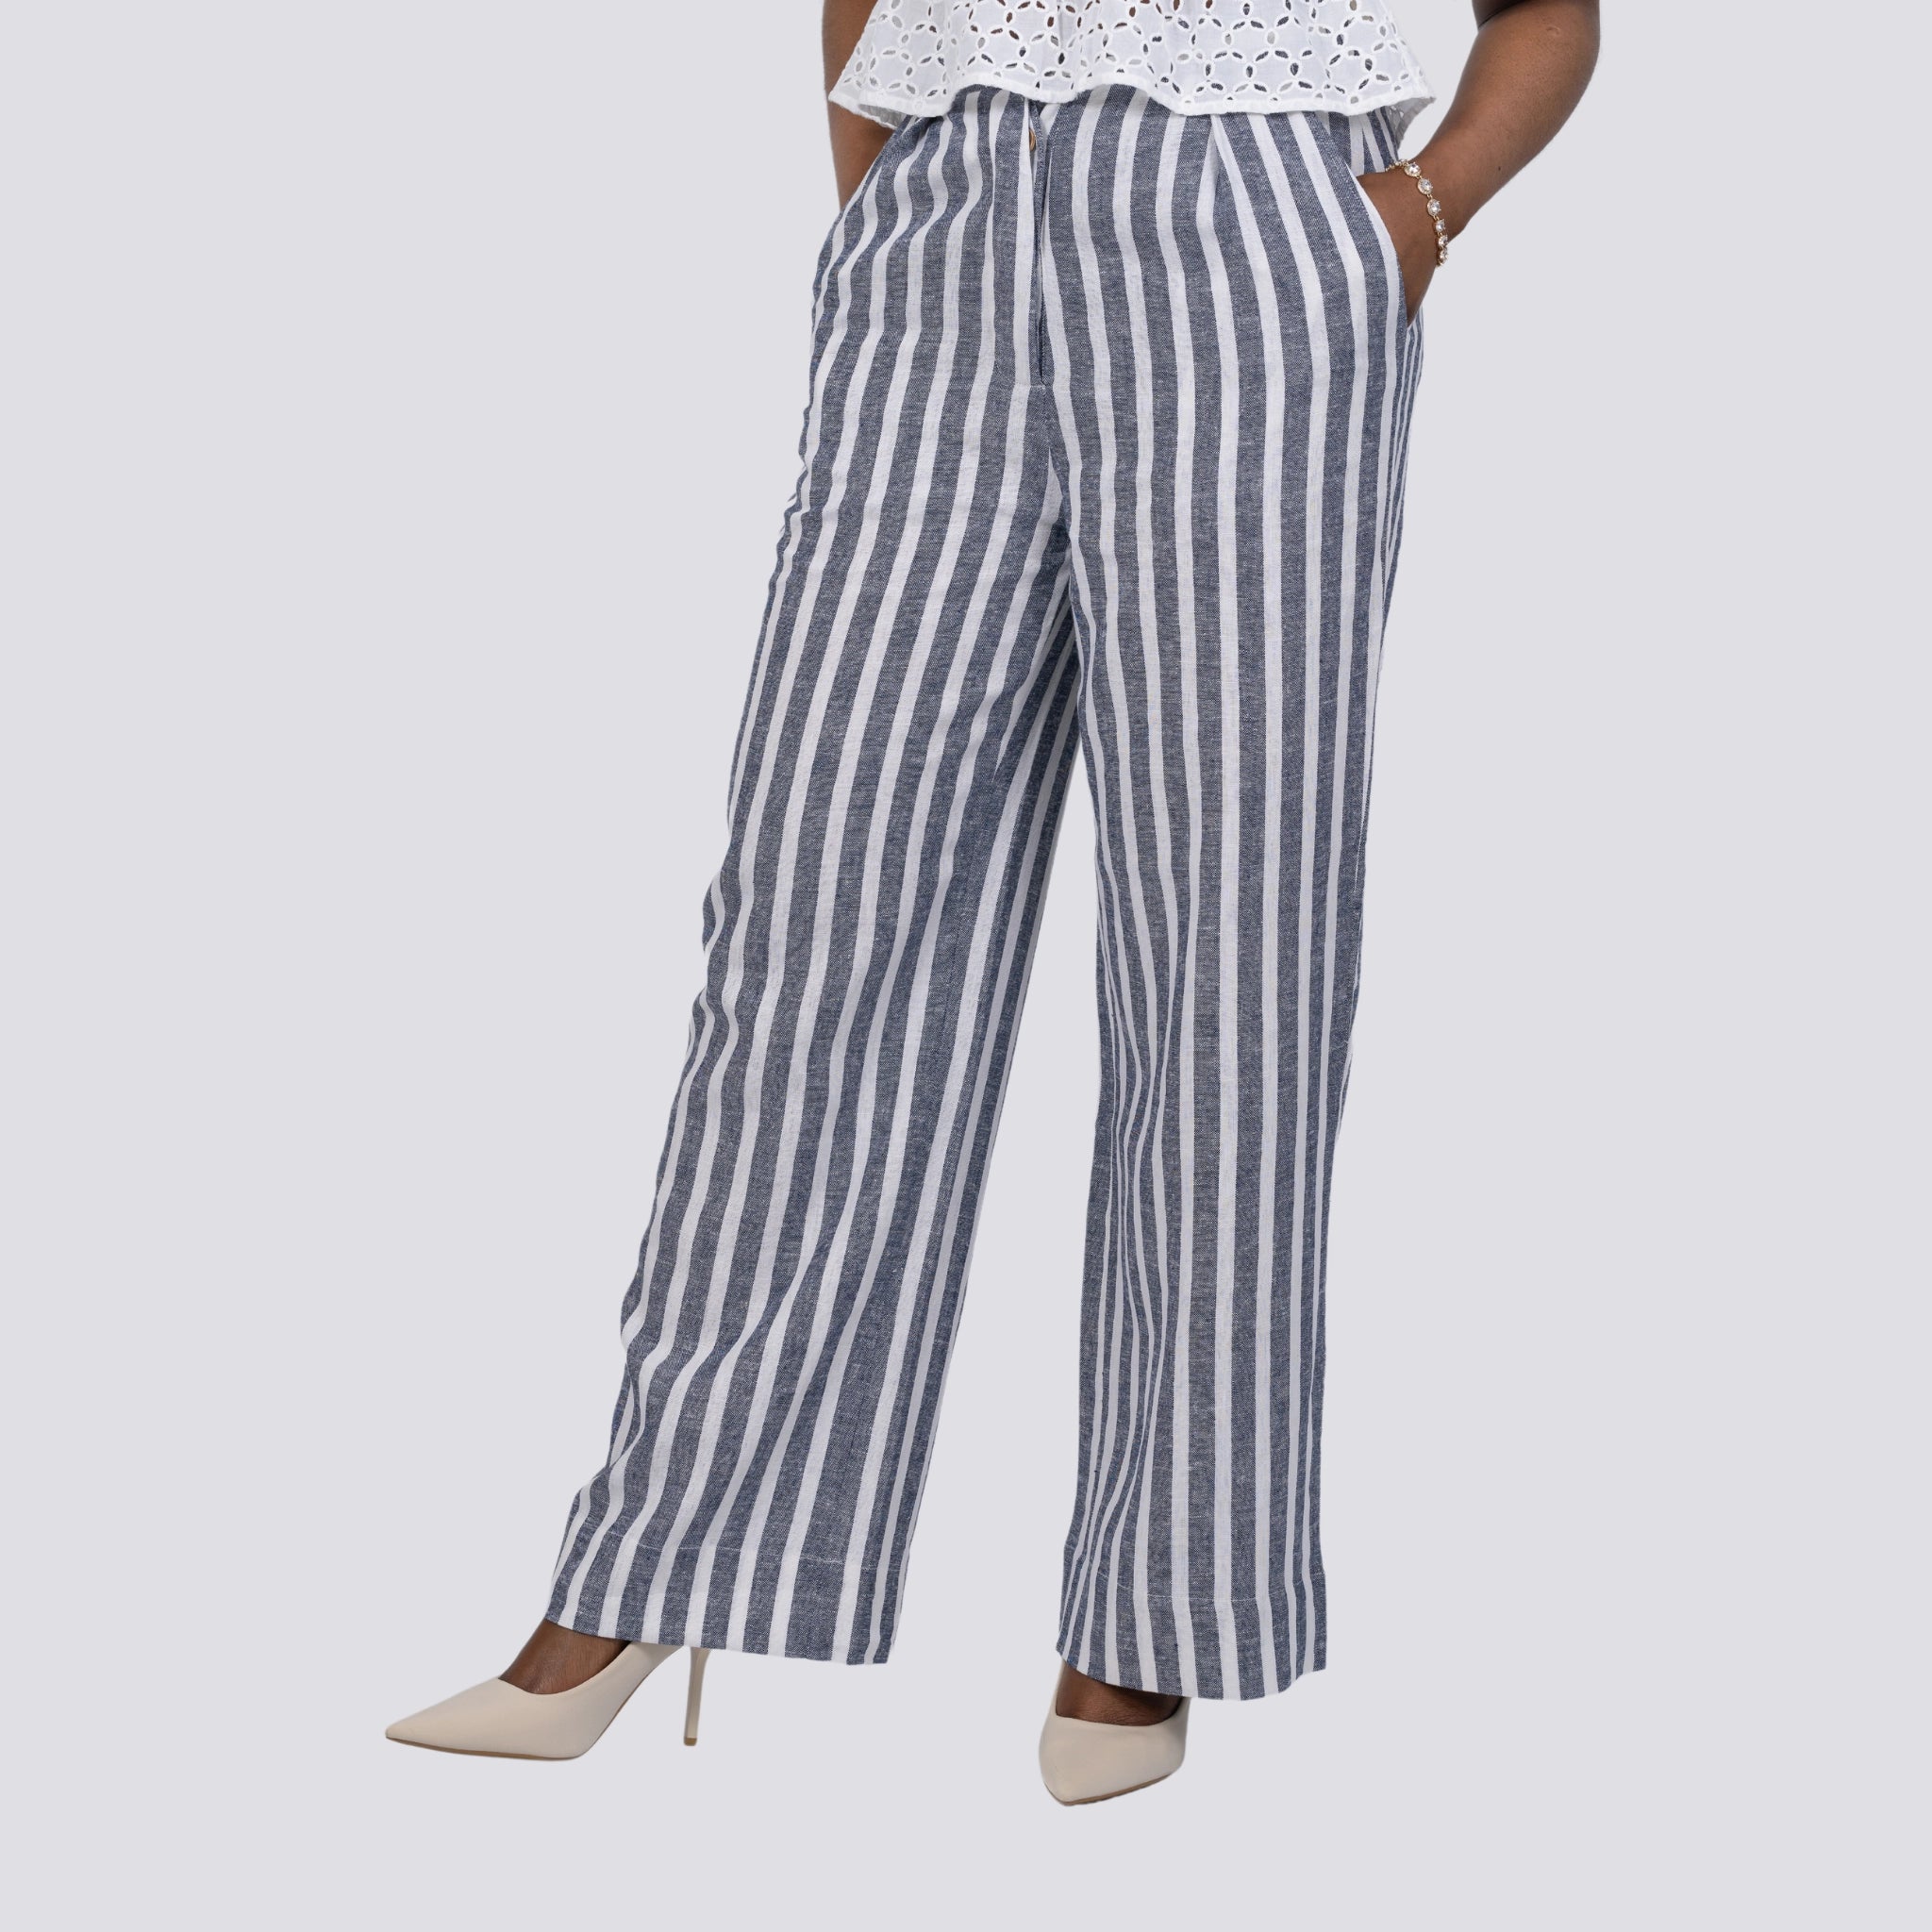 Monochrome Chic Linen Trousers